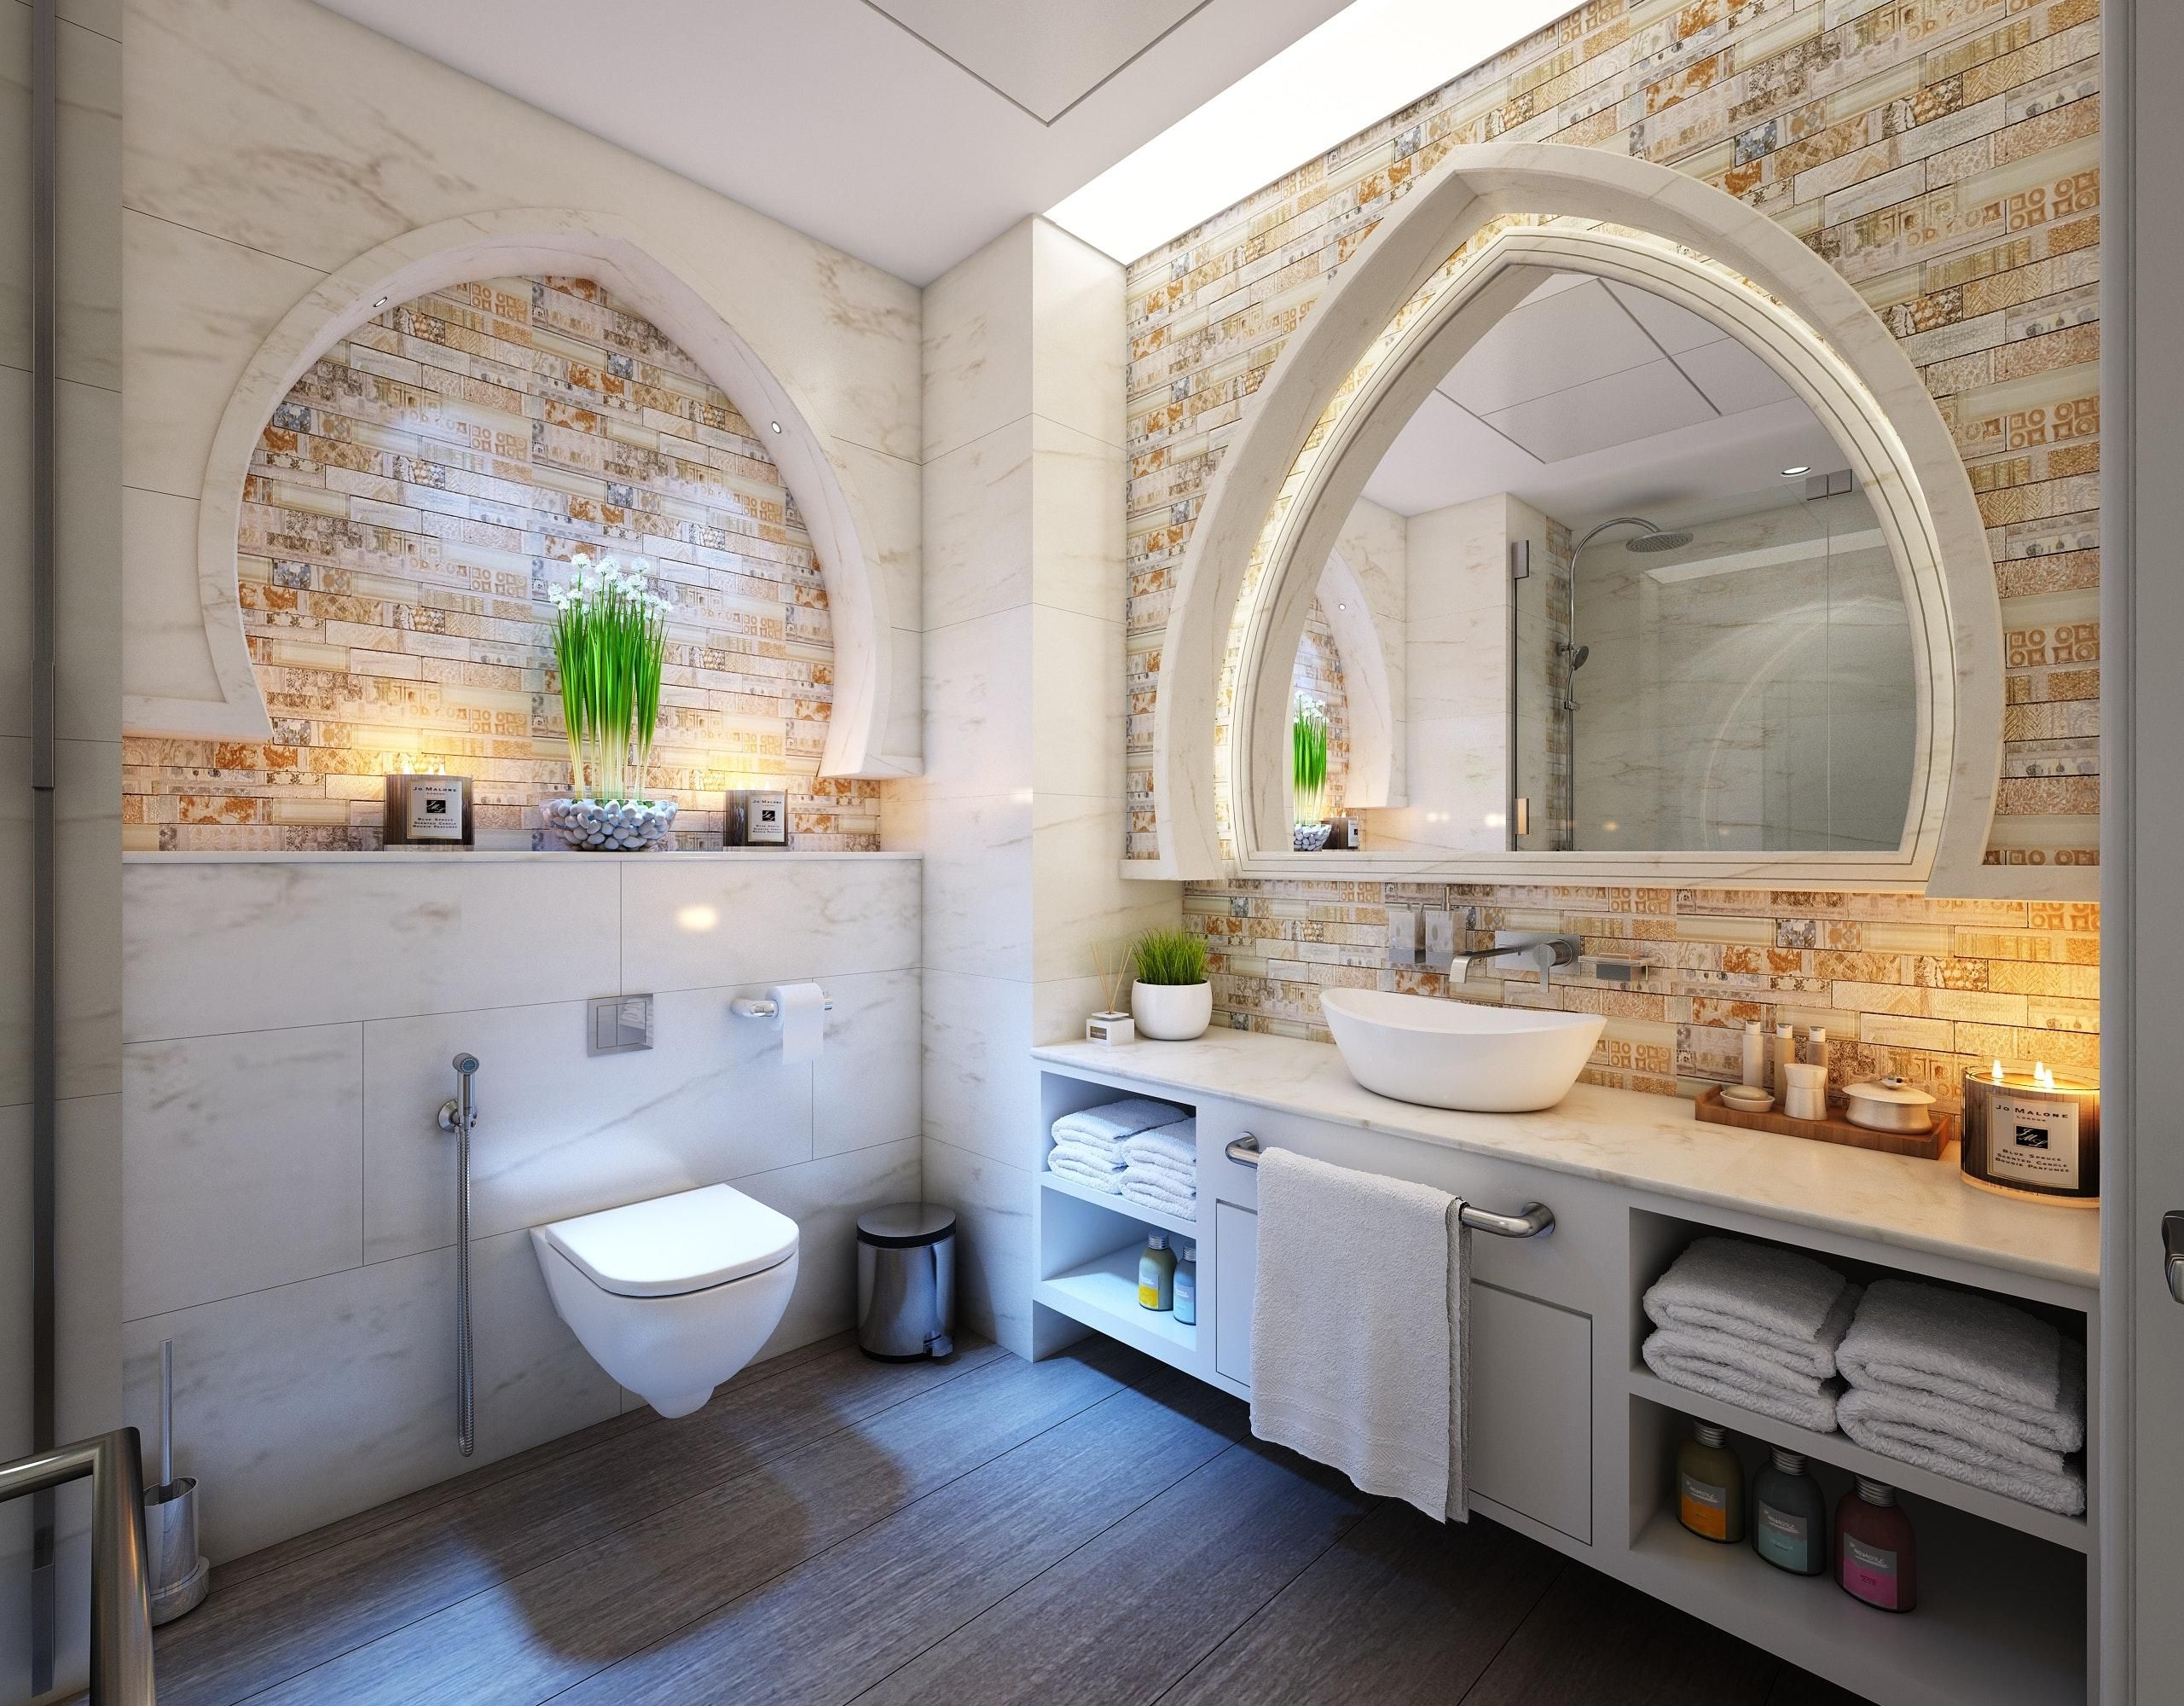 Обдуманный выбор: какое зеркало выбрать для маленькой ванной комнаты - Дизайн 24